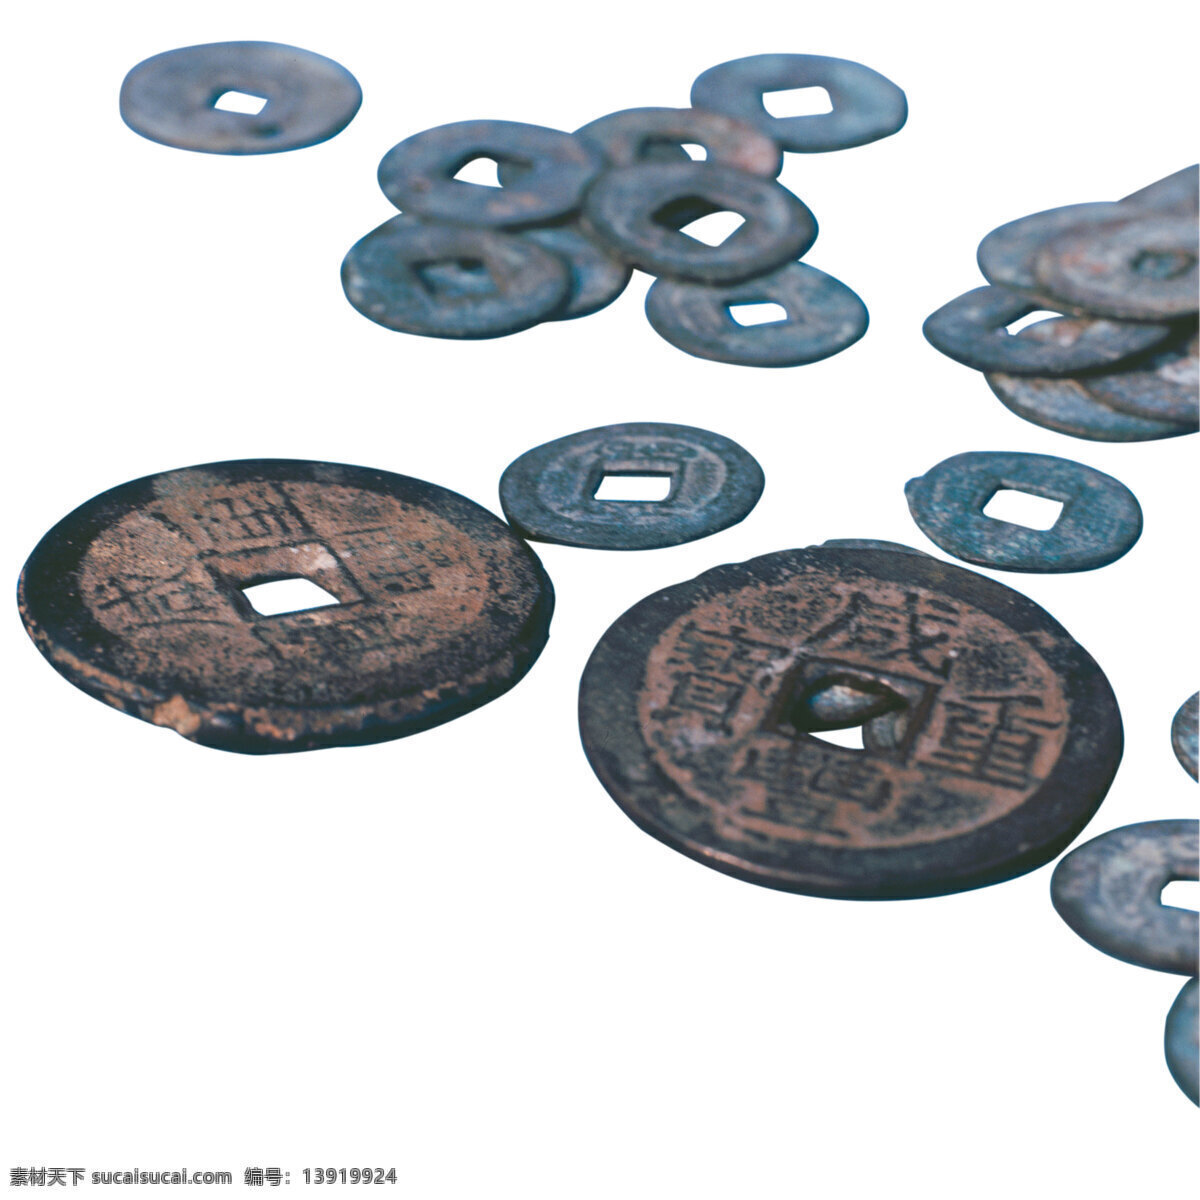 古代钱币 中国古代铜币 商务金融 金融货币 摄影图库